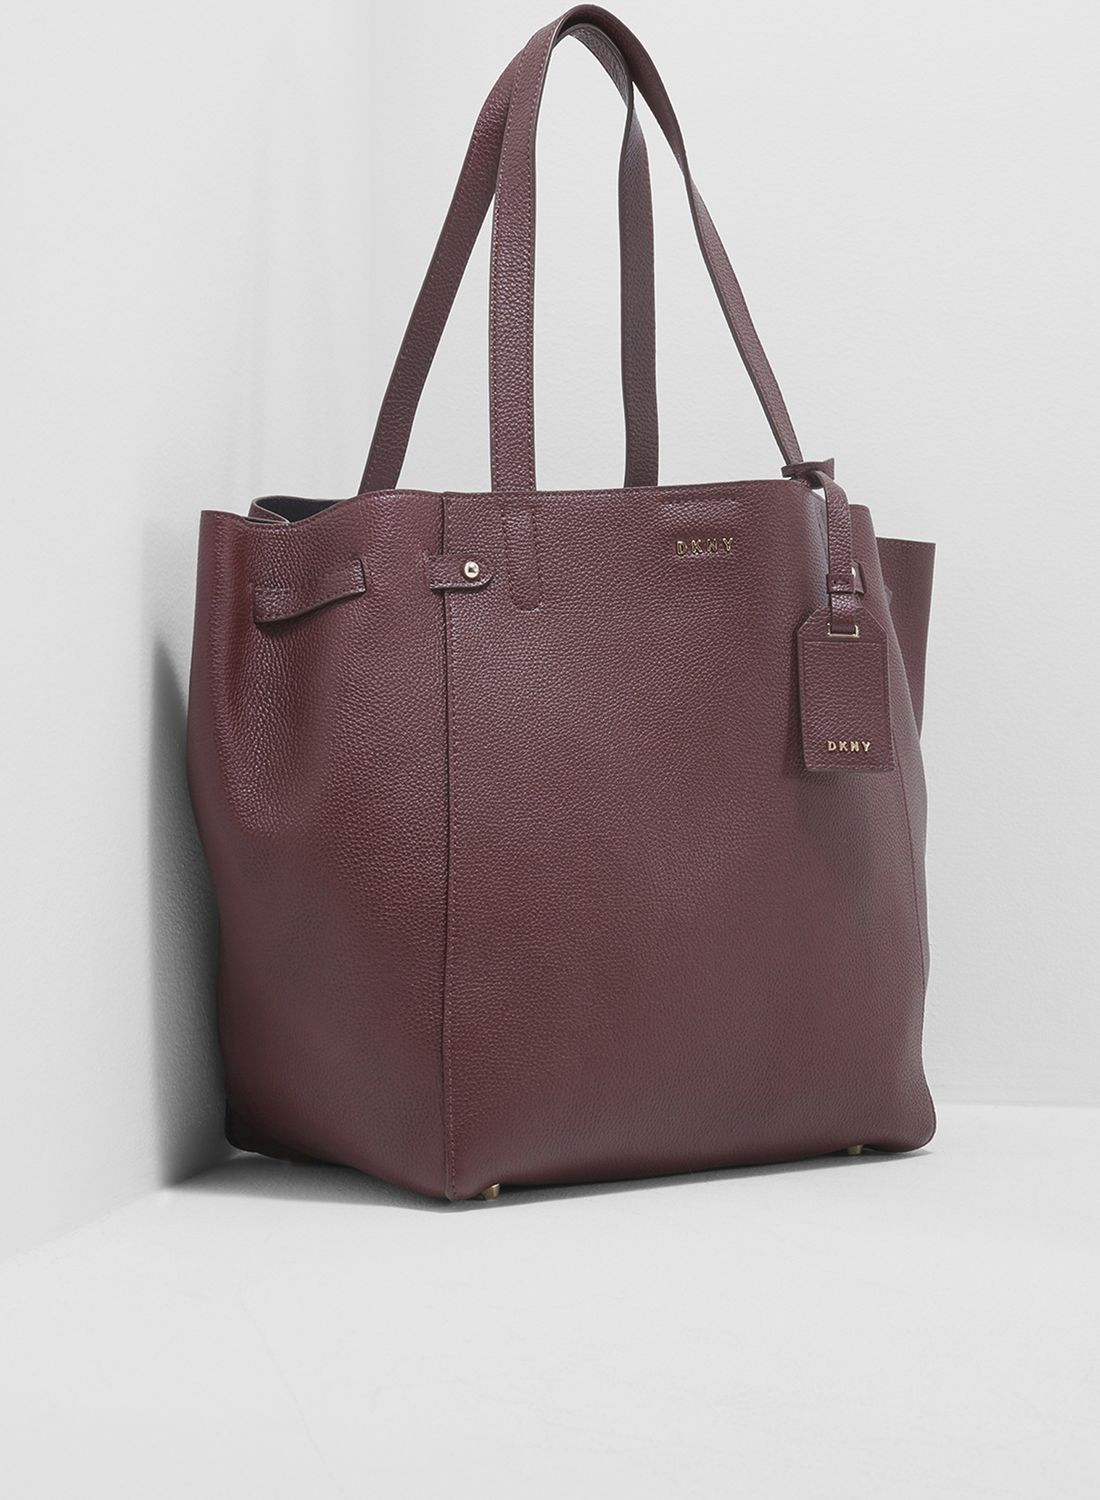 DKNY Tote Bag For Women - Multi Color price in Saudi Arabia,  Saudi  Arabia